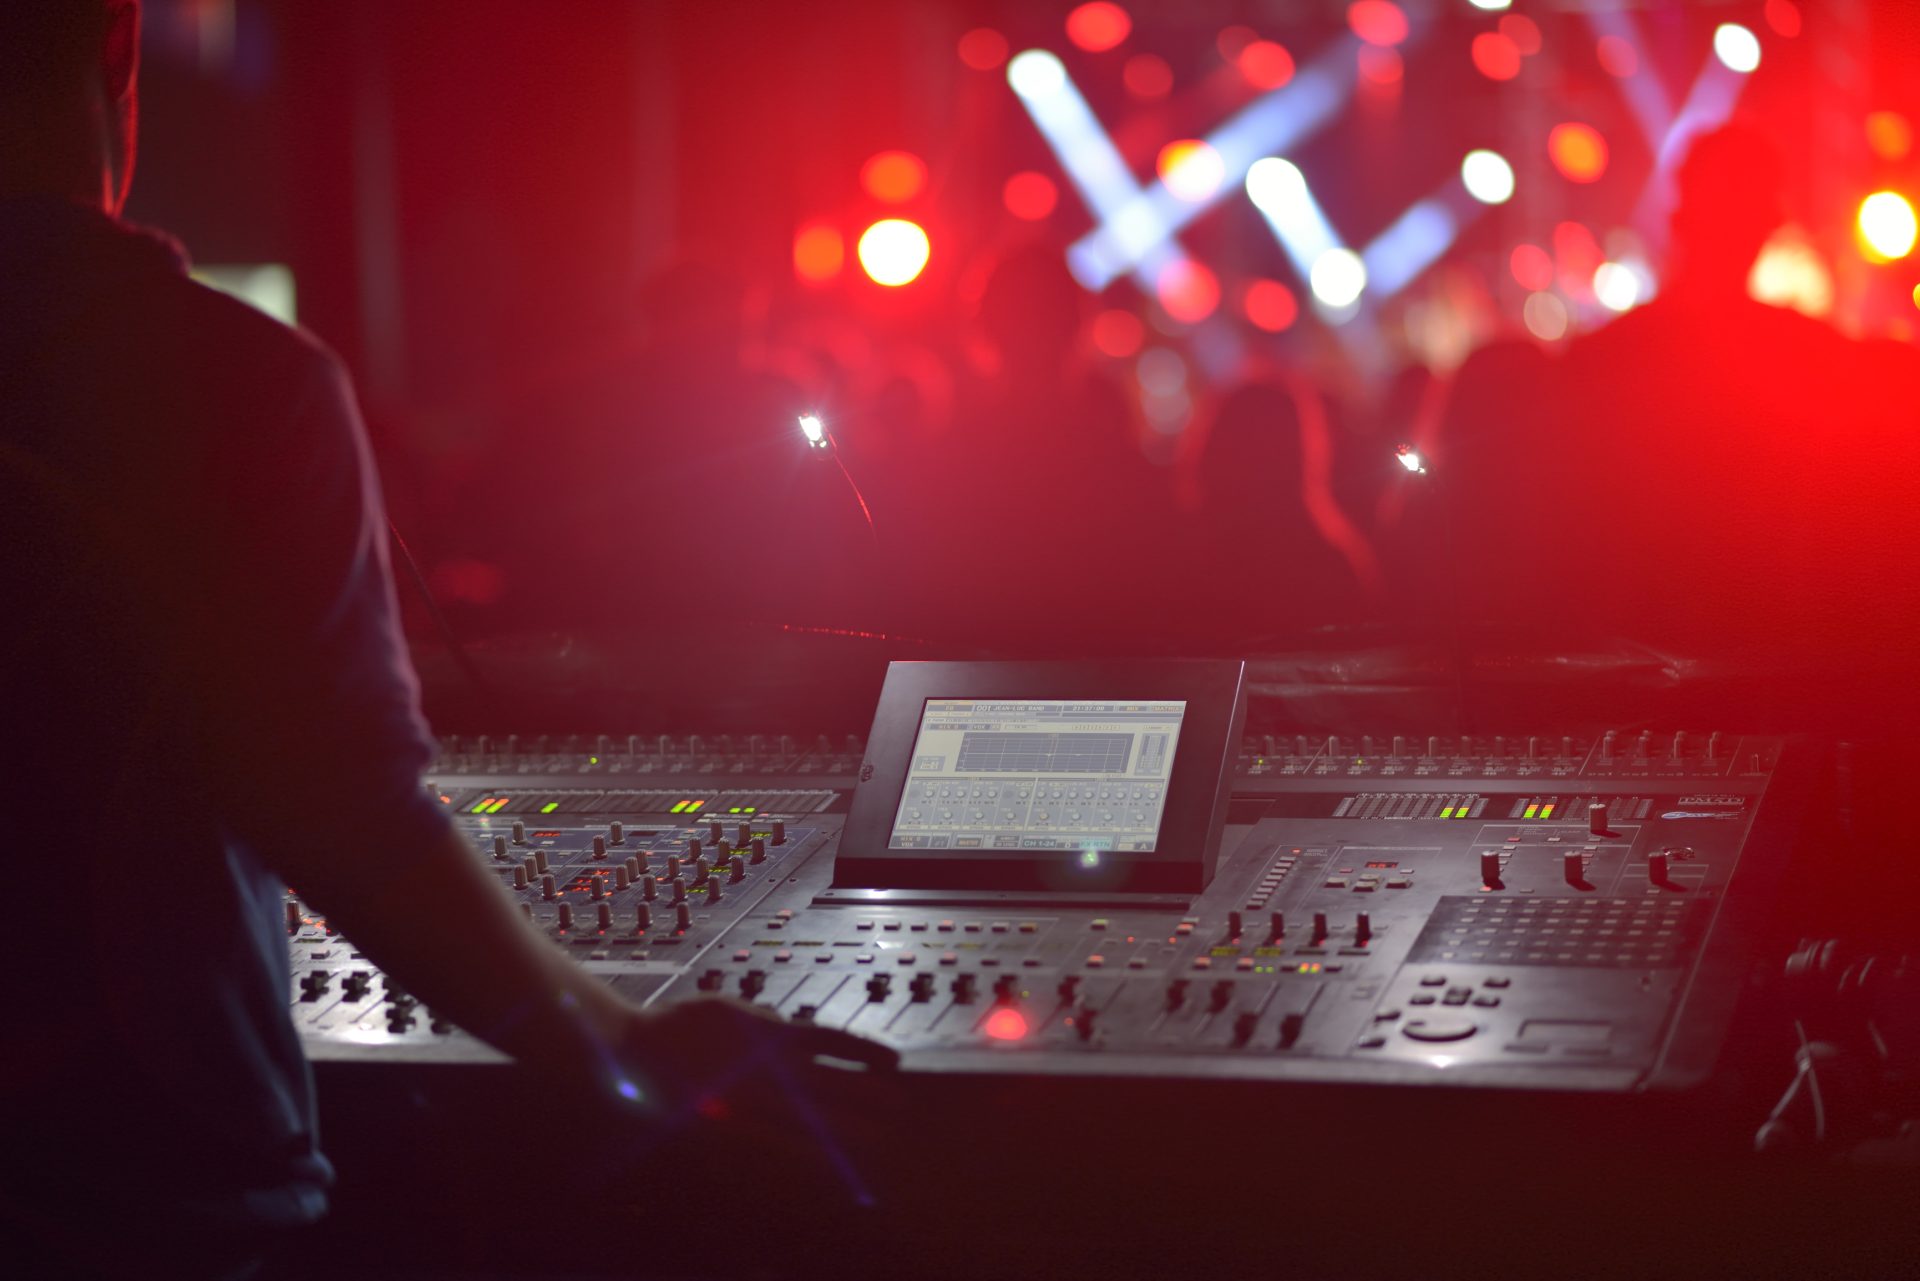 A DJ behind a soundboard at a concert